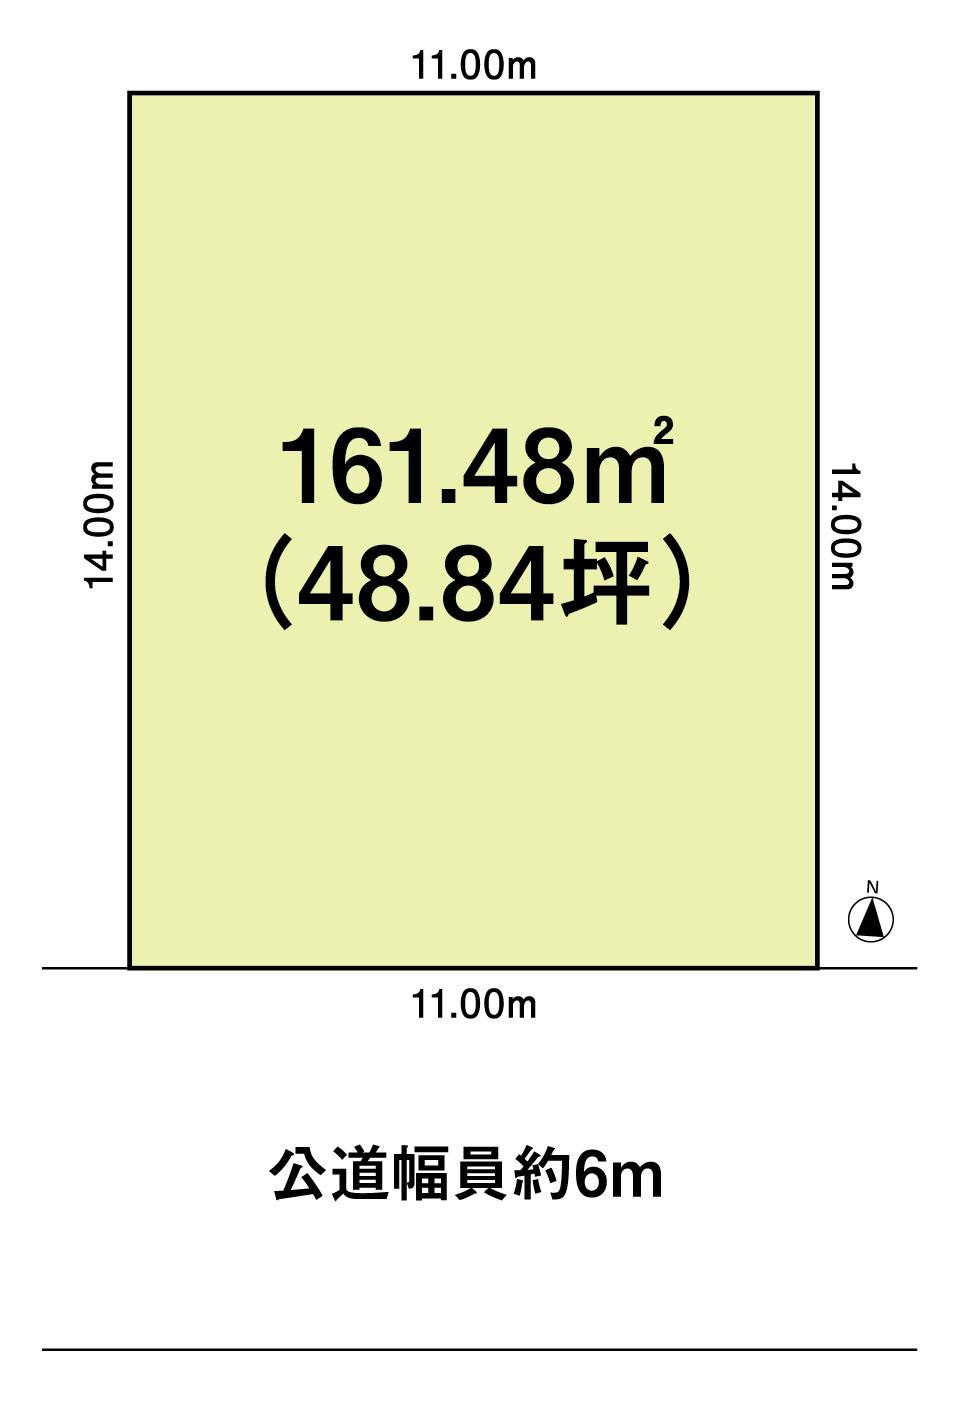 Compartment figure. 21,400,000 yen, 3DK, Land area 161.48 sq m , Building area 73.02 sq m